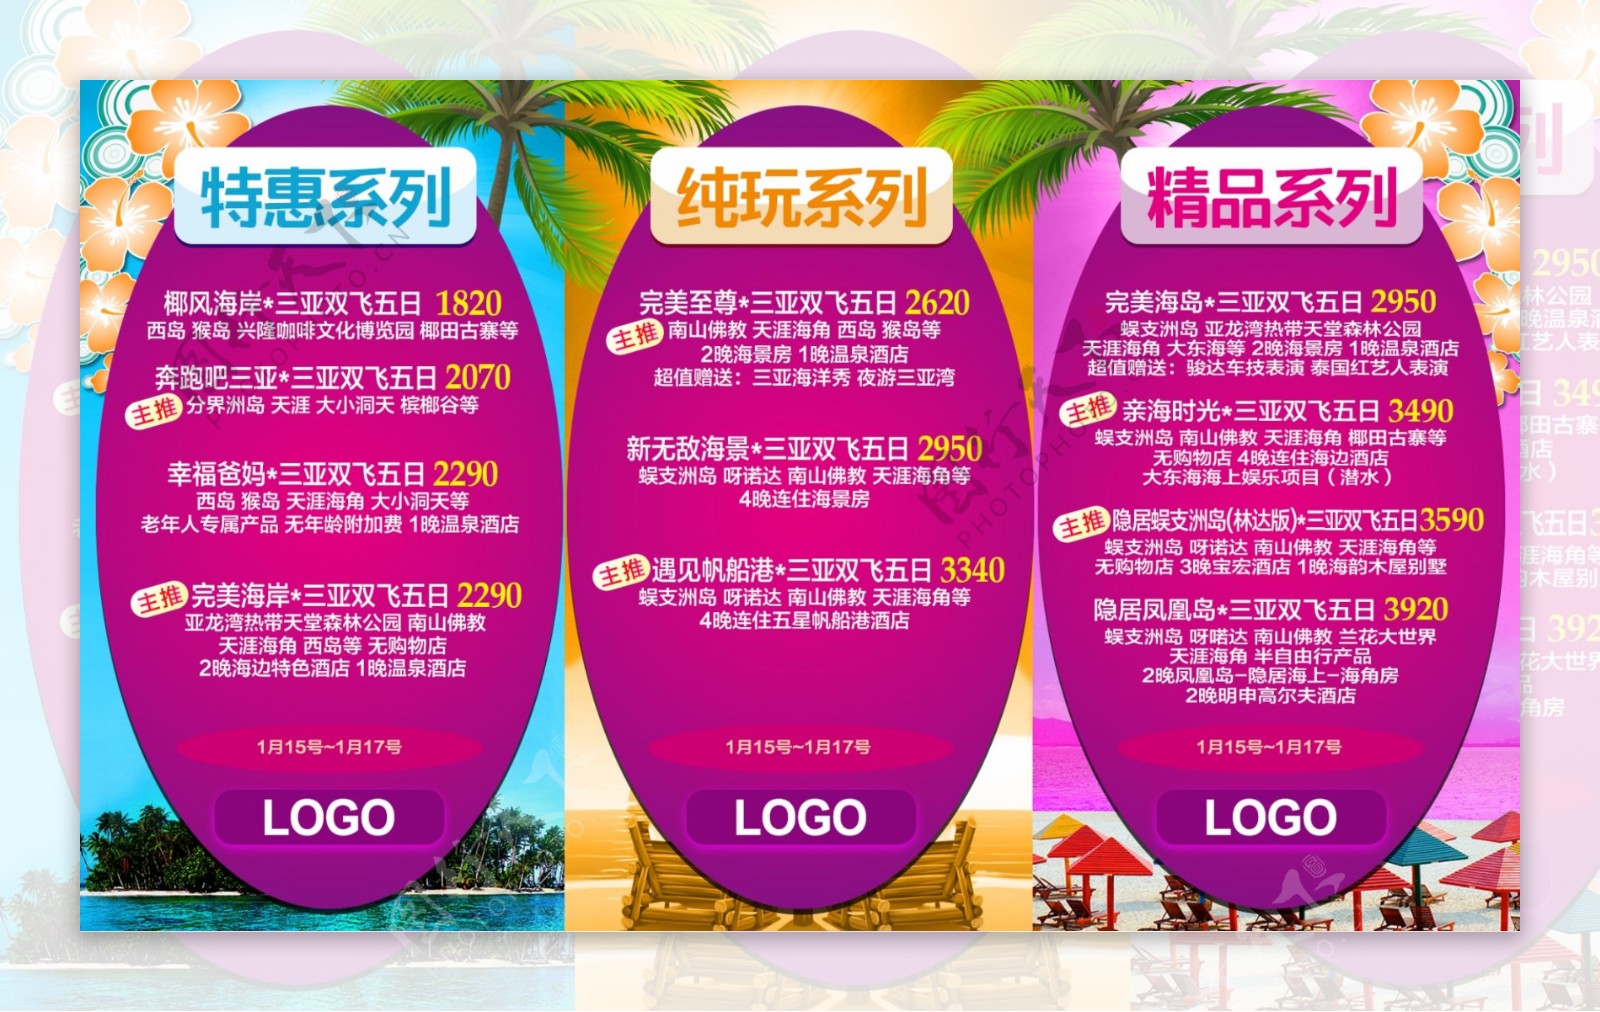 海南旅游系列广告